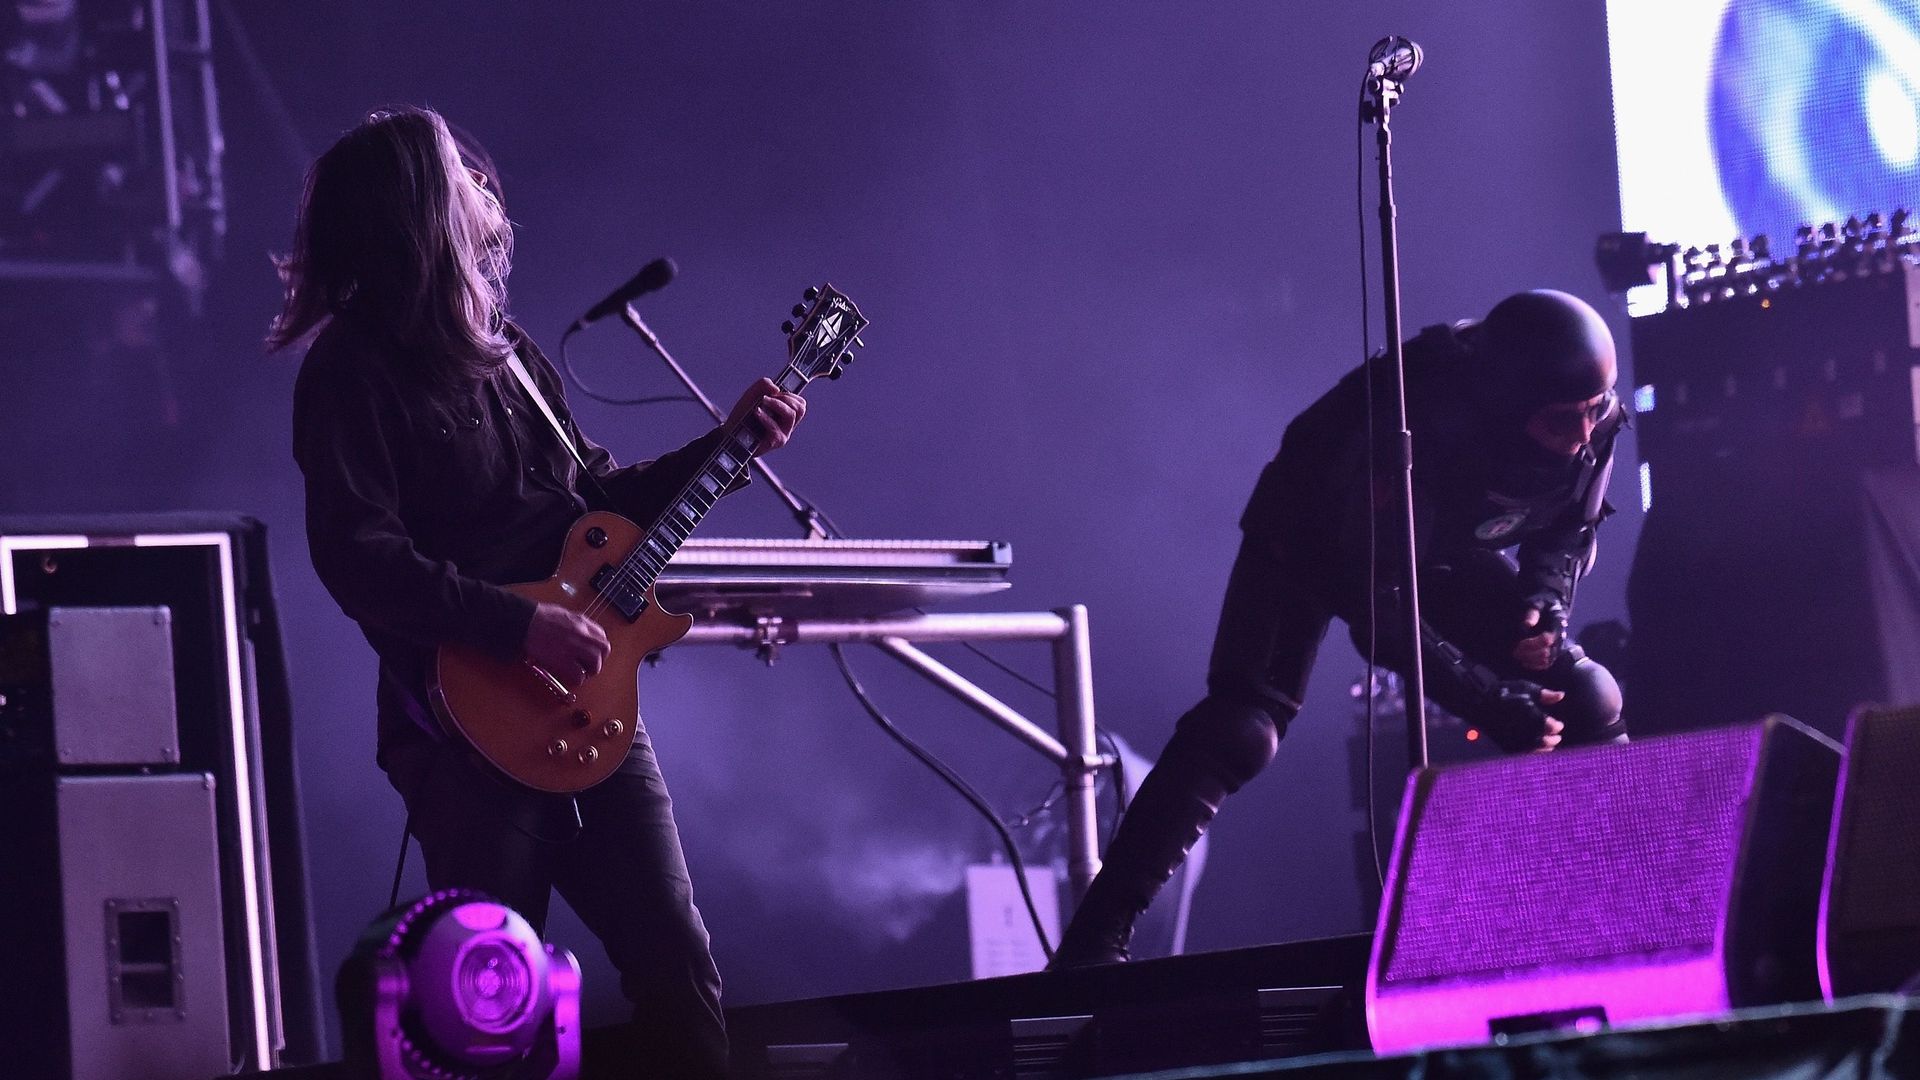 Adam Jones et Maynard Keenan de Tool se produisant sur scène lors du festival de musique Governors Ball 2017 à New York le 4 juin 2017.